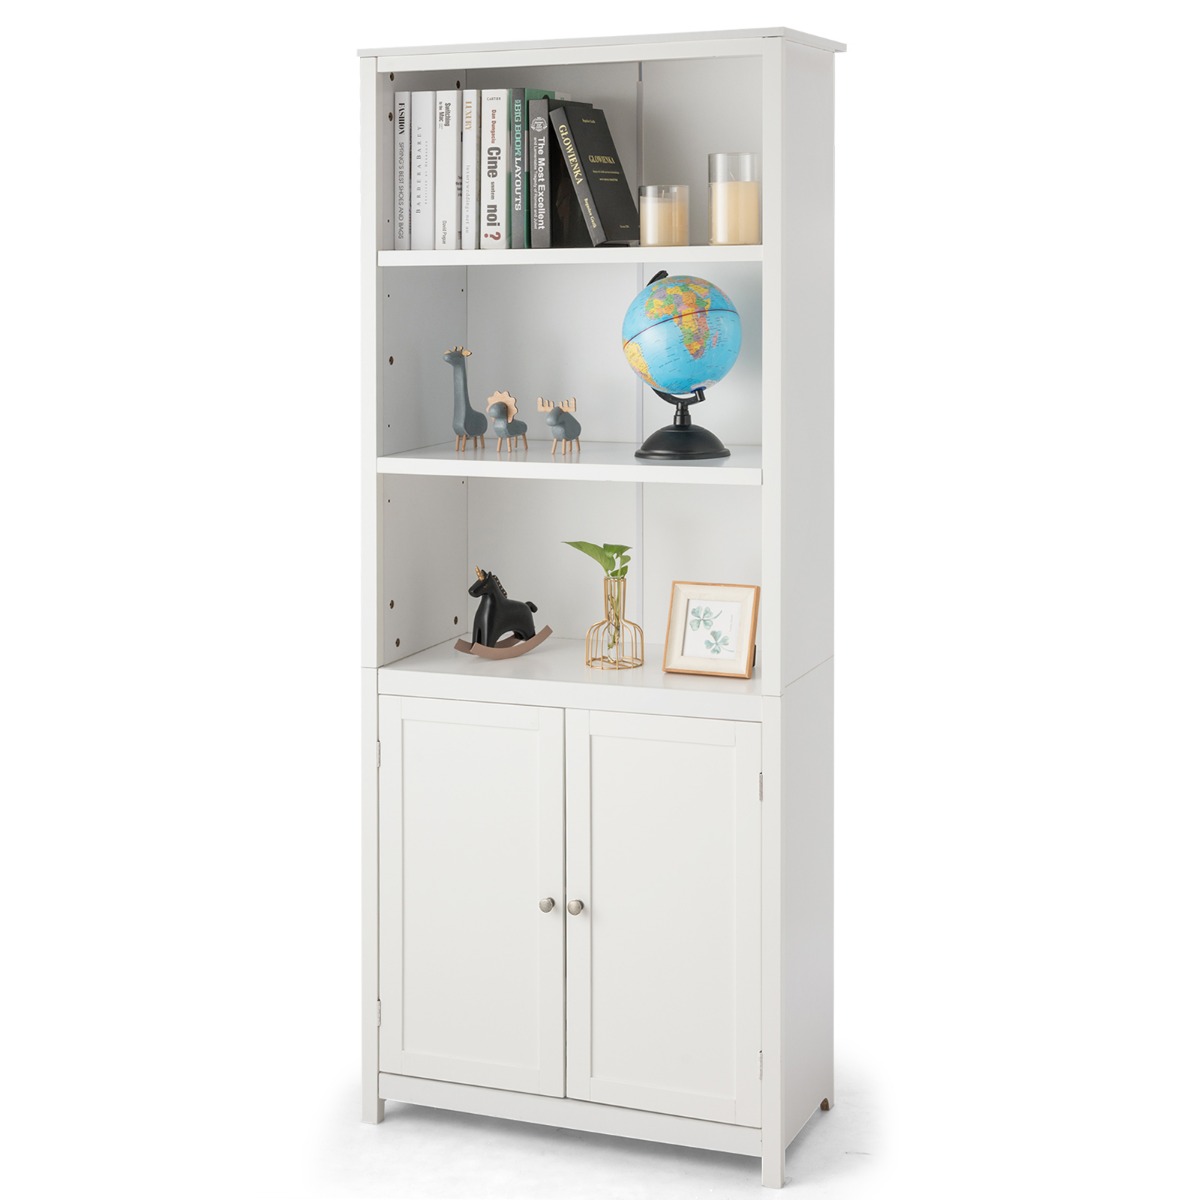 Bücherschrank mit Türen & 3 Offenen Regalen Bücherregal Hochschrank 74,5 x 35,5 x 181,5 cm Weiß von Costway